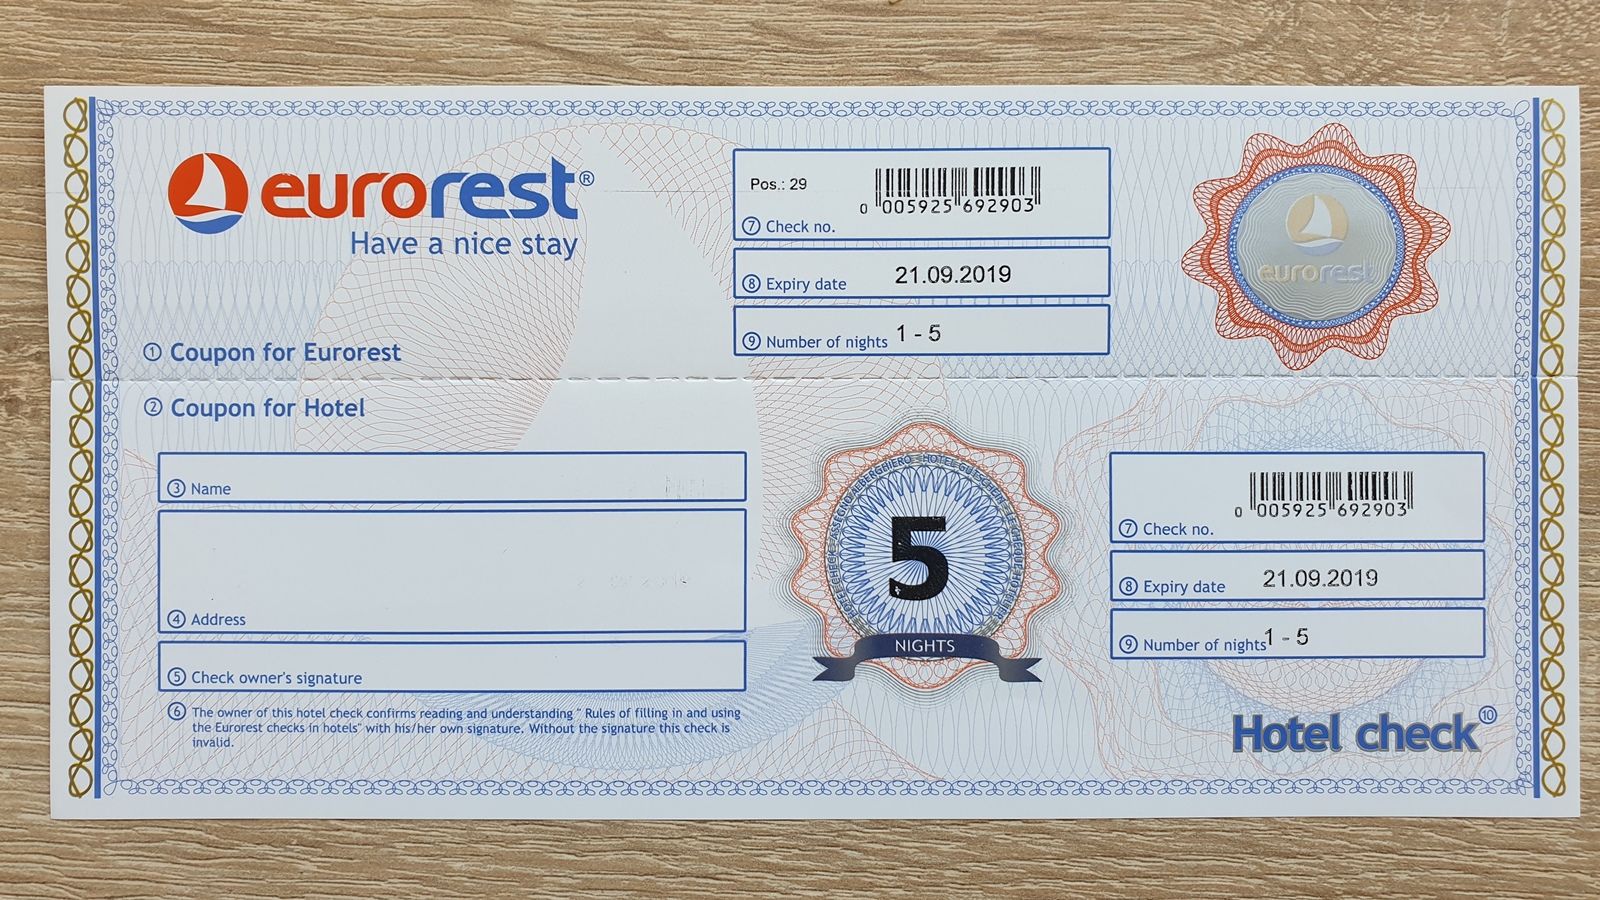 Recenze: Je voucher Eurorest scam, nebo výhodná nabídka?